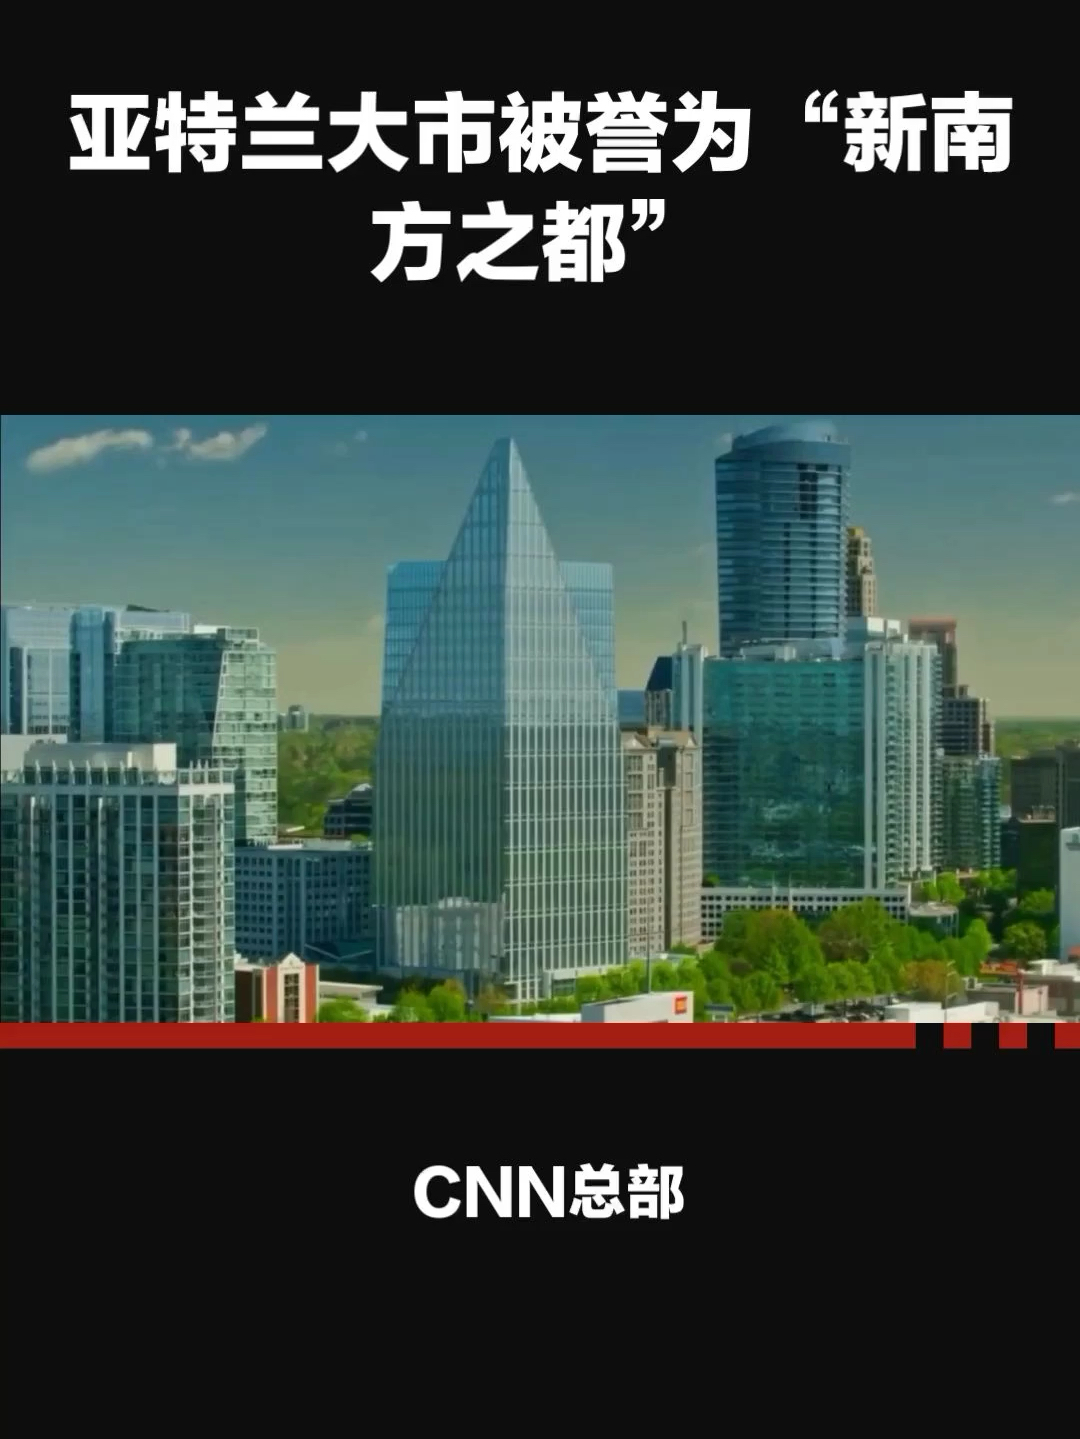 CNN总部：亚特兰大市的标志与象征